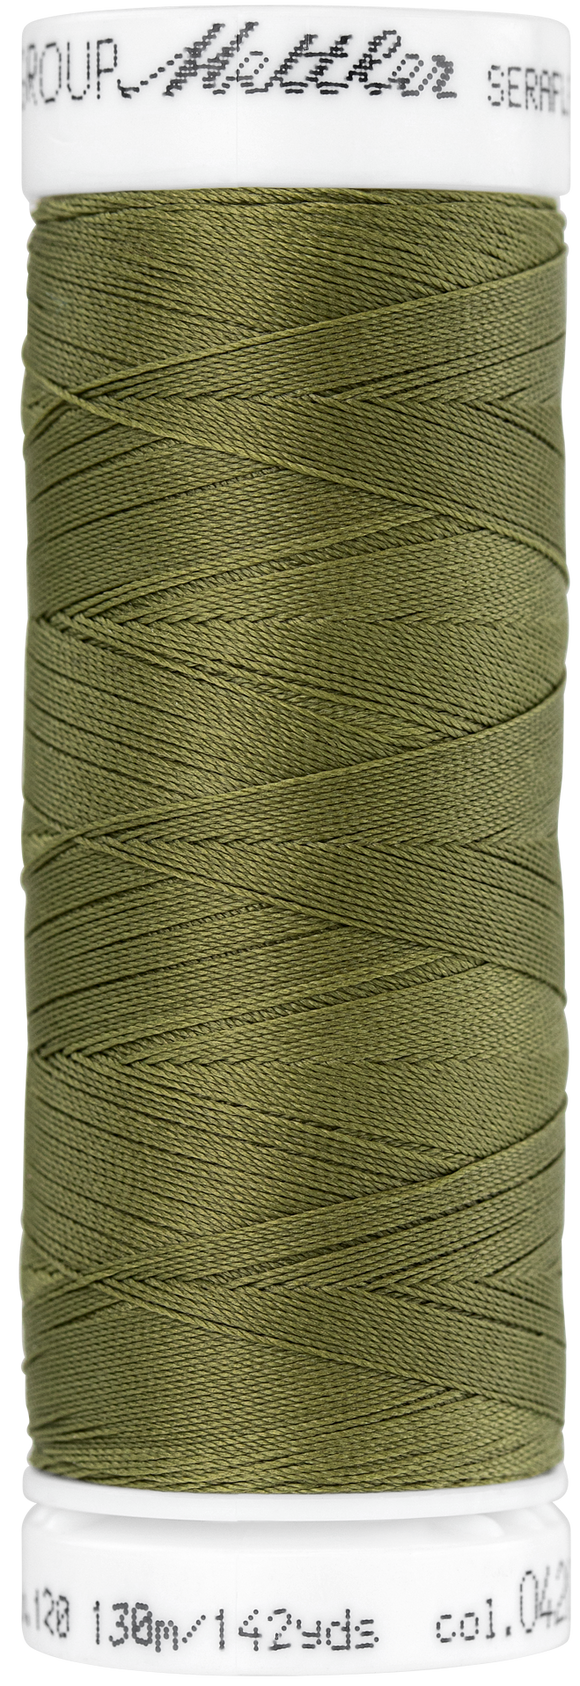 SERAFLEX elastisches Nähgarn, Olive Drab 0420